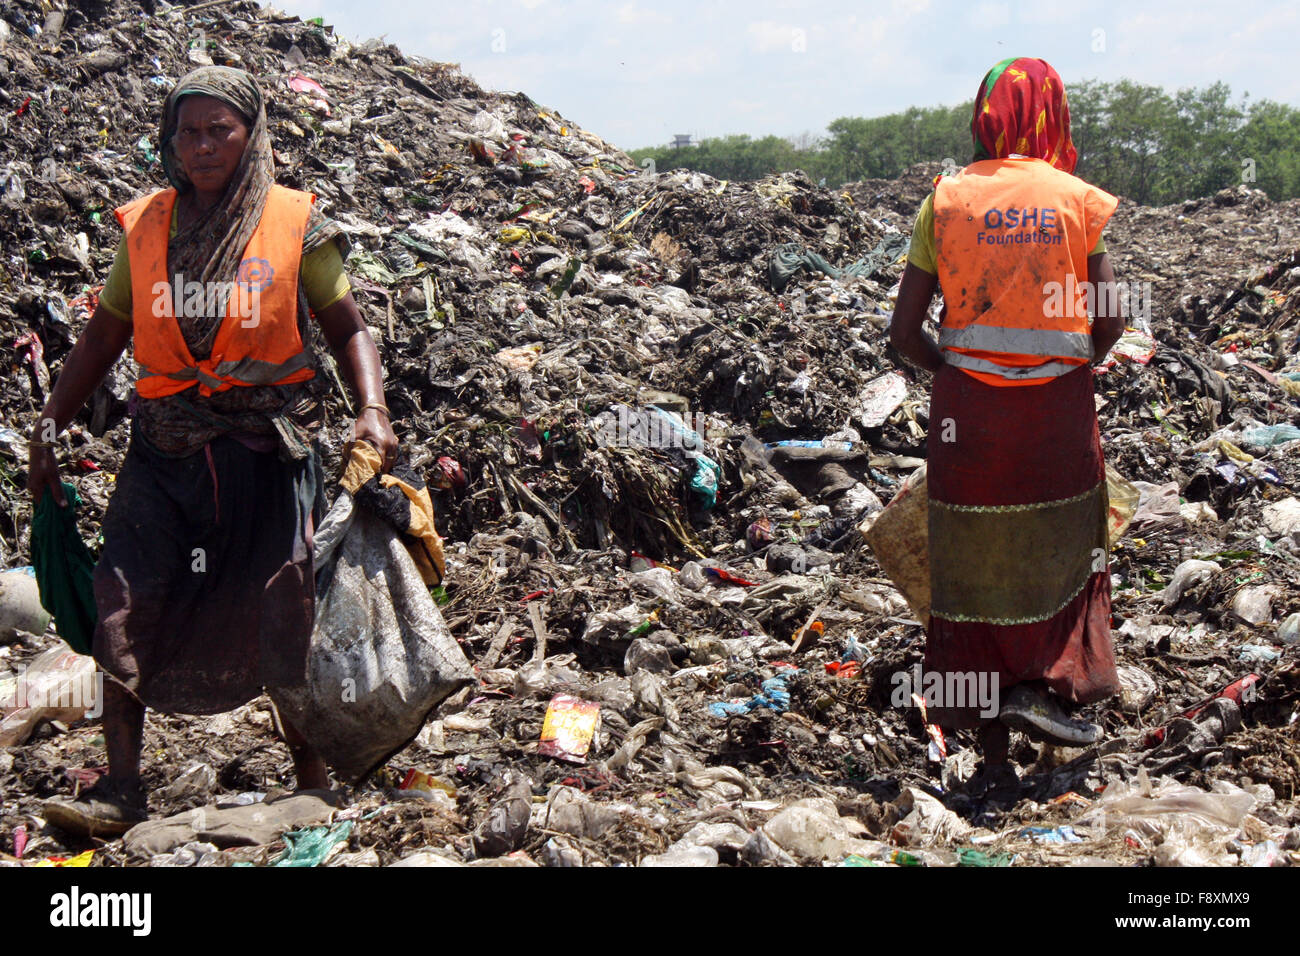 Männliche und weibliche waste Pickers holen die nicht biologisch abbaubare Abfälle für die Recyclingindustrie in Abfall Dump Hof verwendet werden. Stockfoto